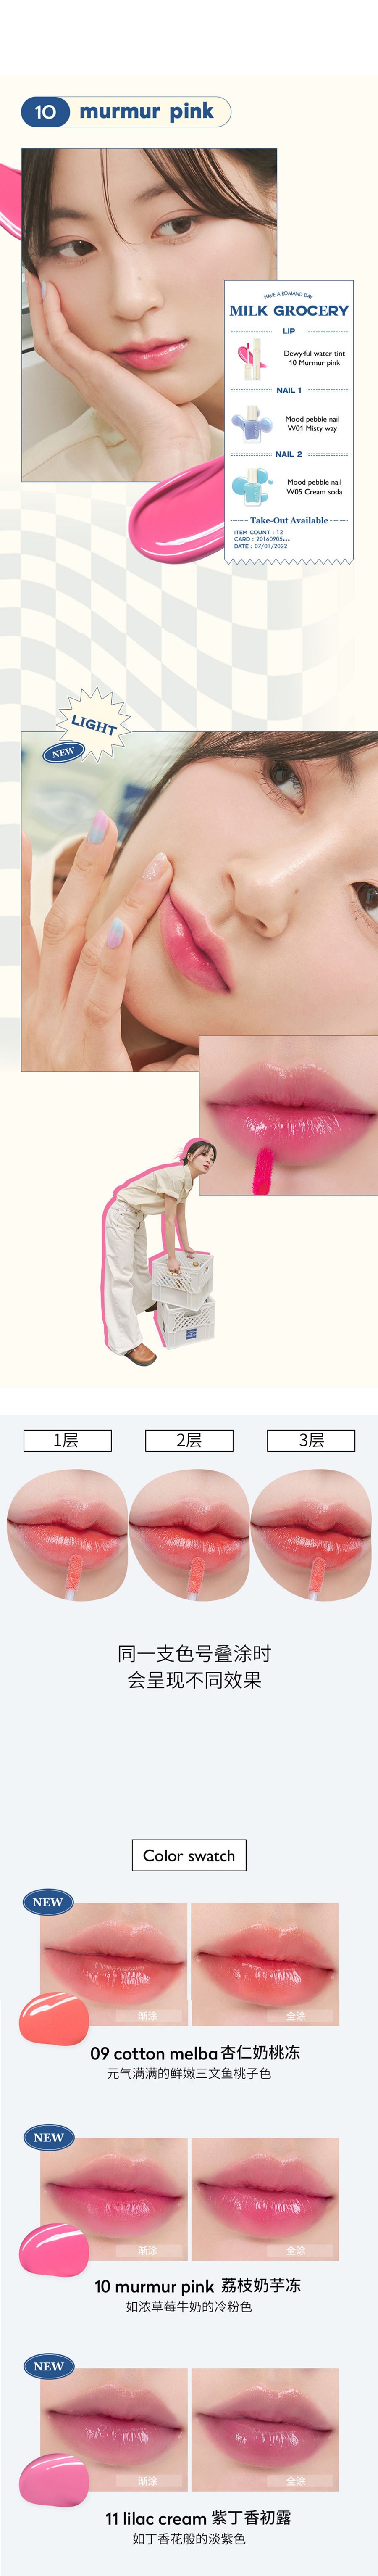 ROM&ND 【新品上市】牛奶雜貨店系列 水感唇釉 #10 荔枝奶芋凍 下單送唇刷